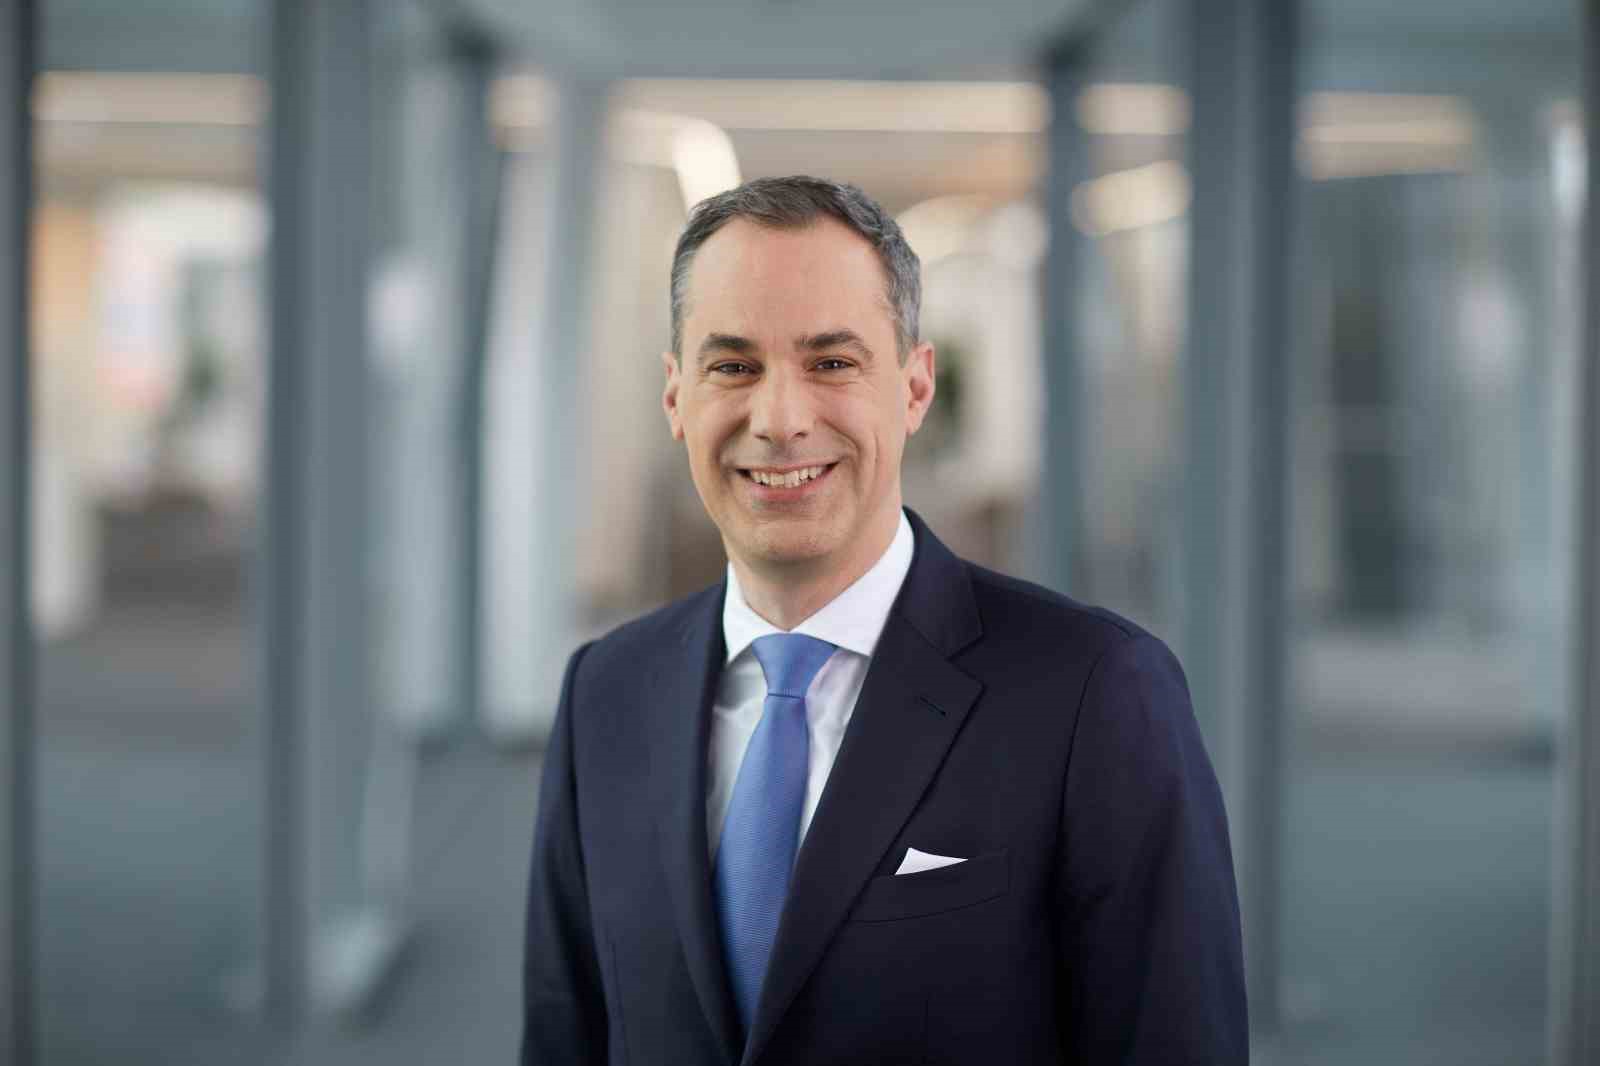 Siemens AG, Başkan ve CEO Roland Busch’un sözleşmesini 5 yıl süreyle uzattı
